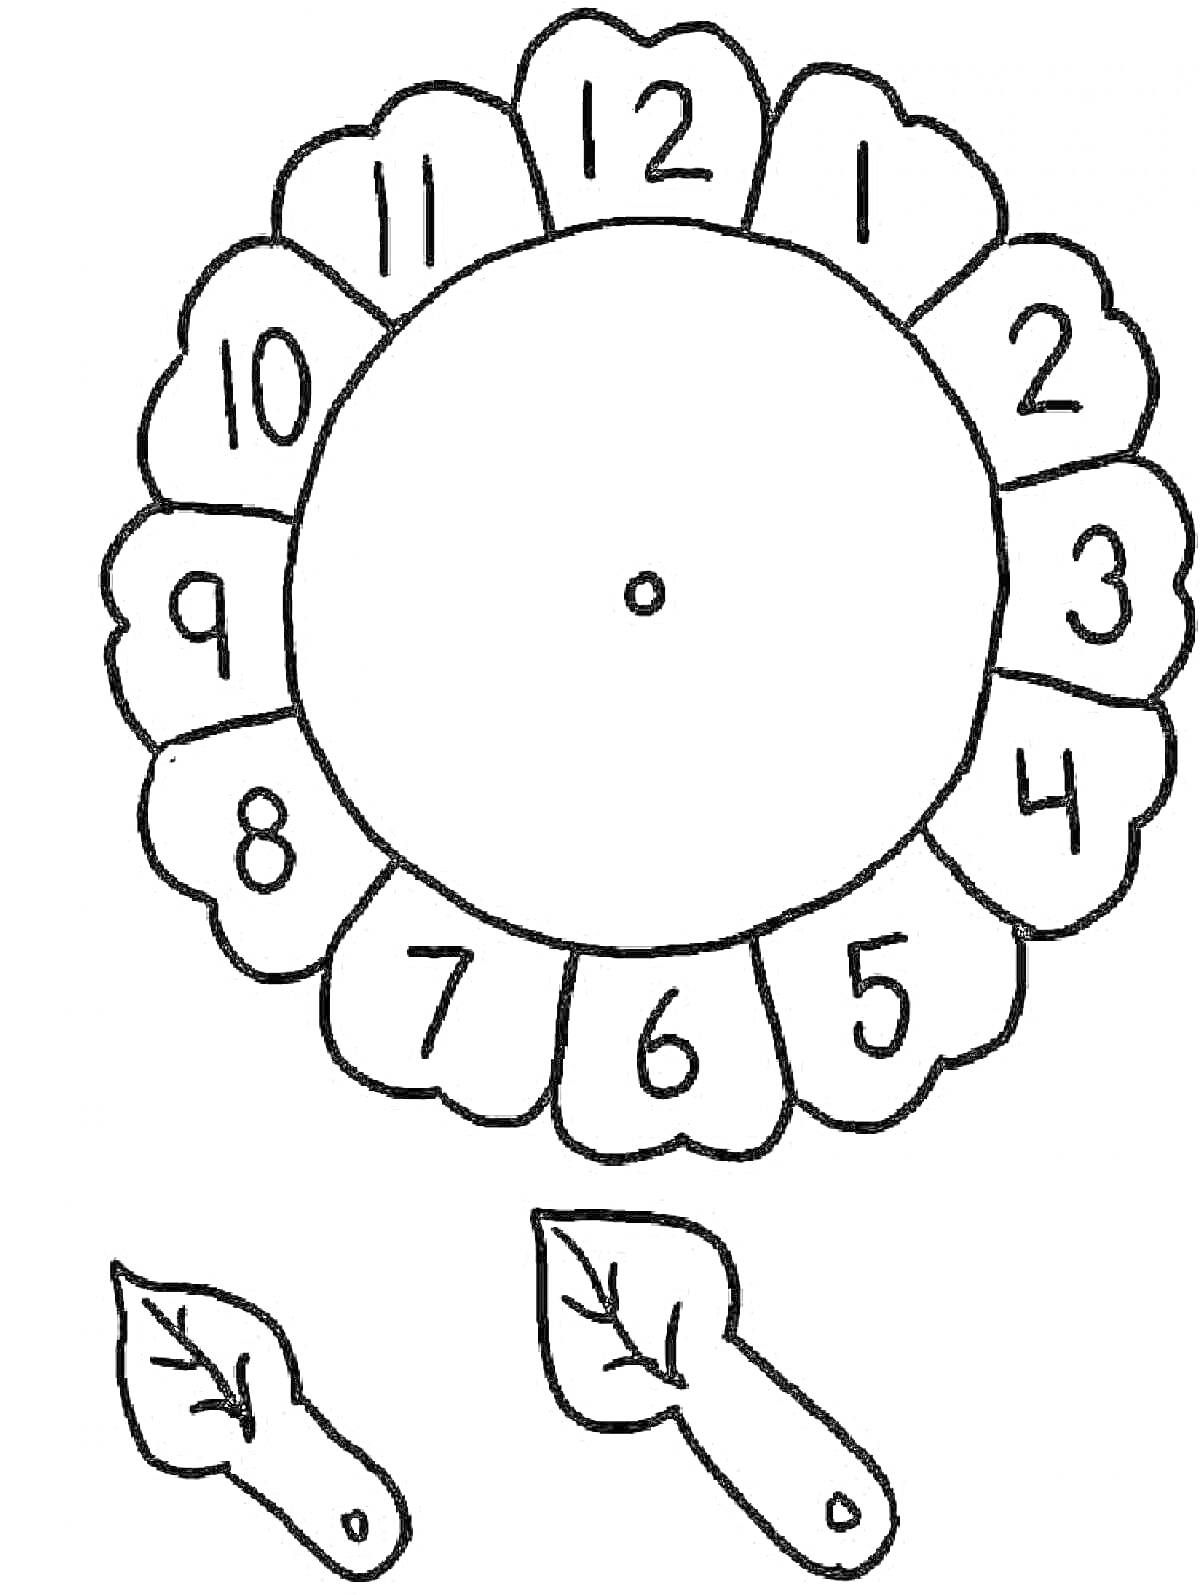 Раскраска Часы в виде цветка с листьями-стрелками и цифрами от 1 до 12